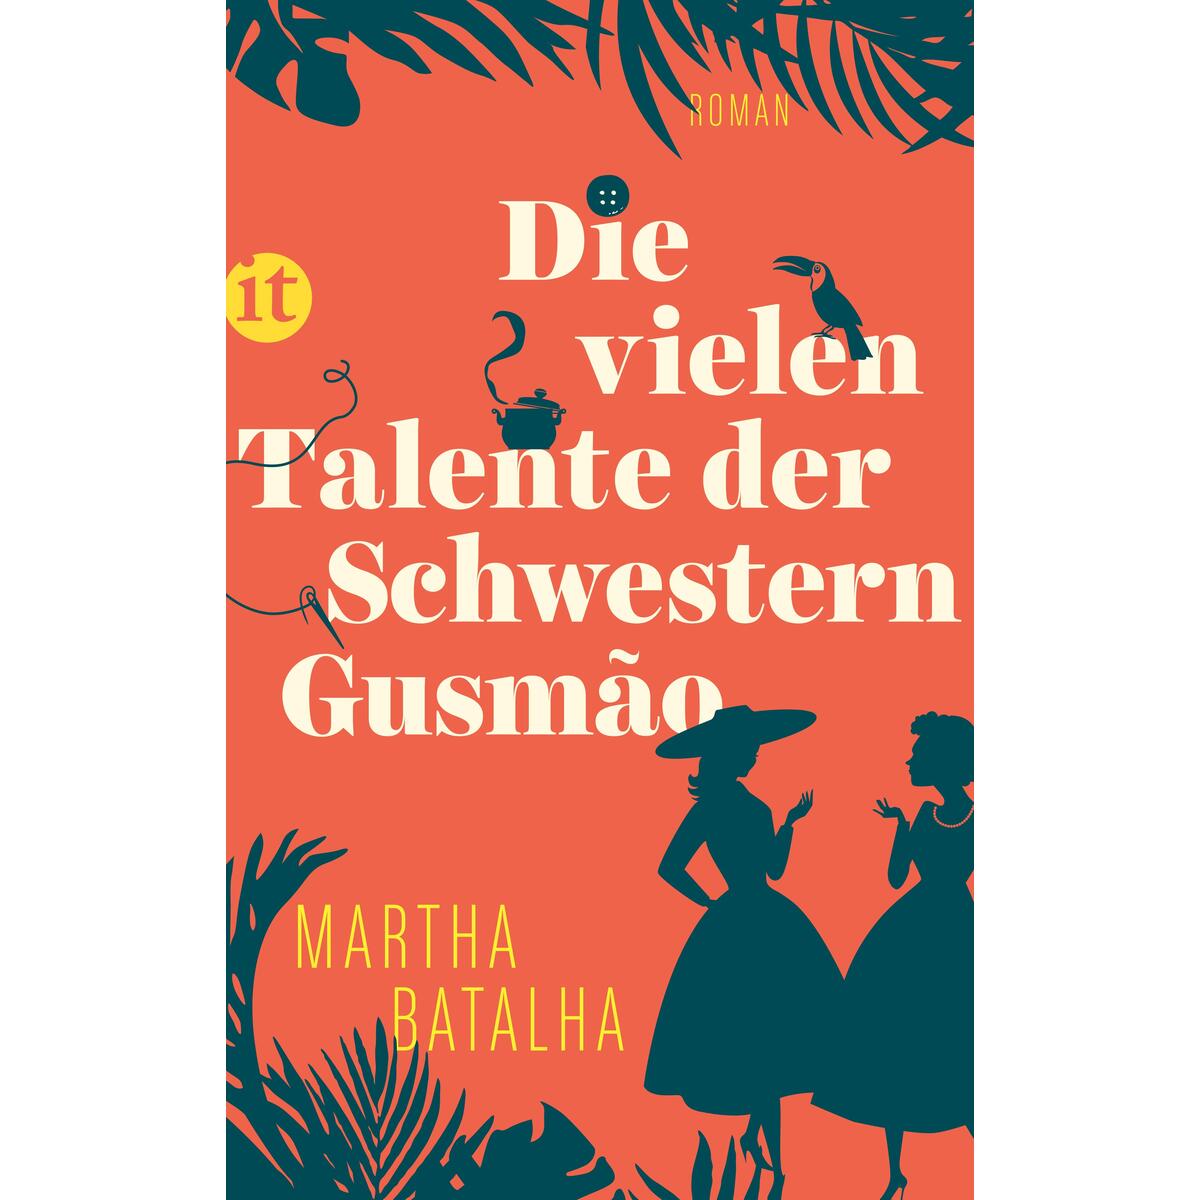 Die vielen Talente der Schwestern Gusmão von Insel Verlag GmbH